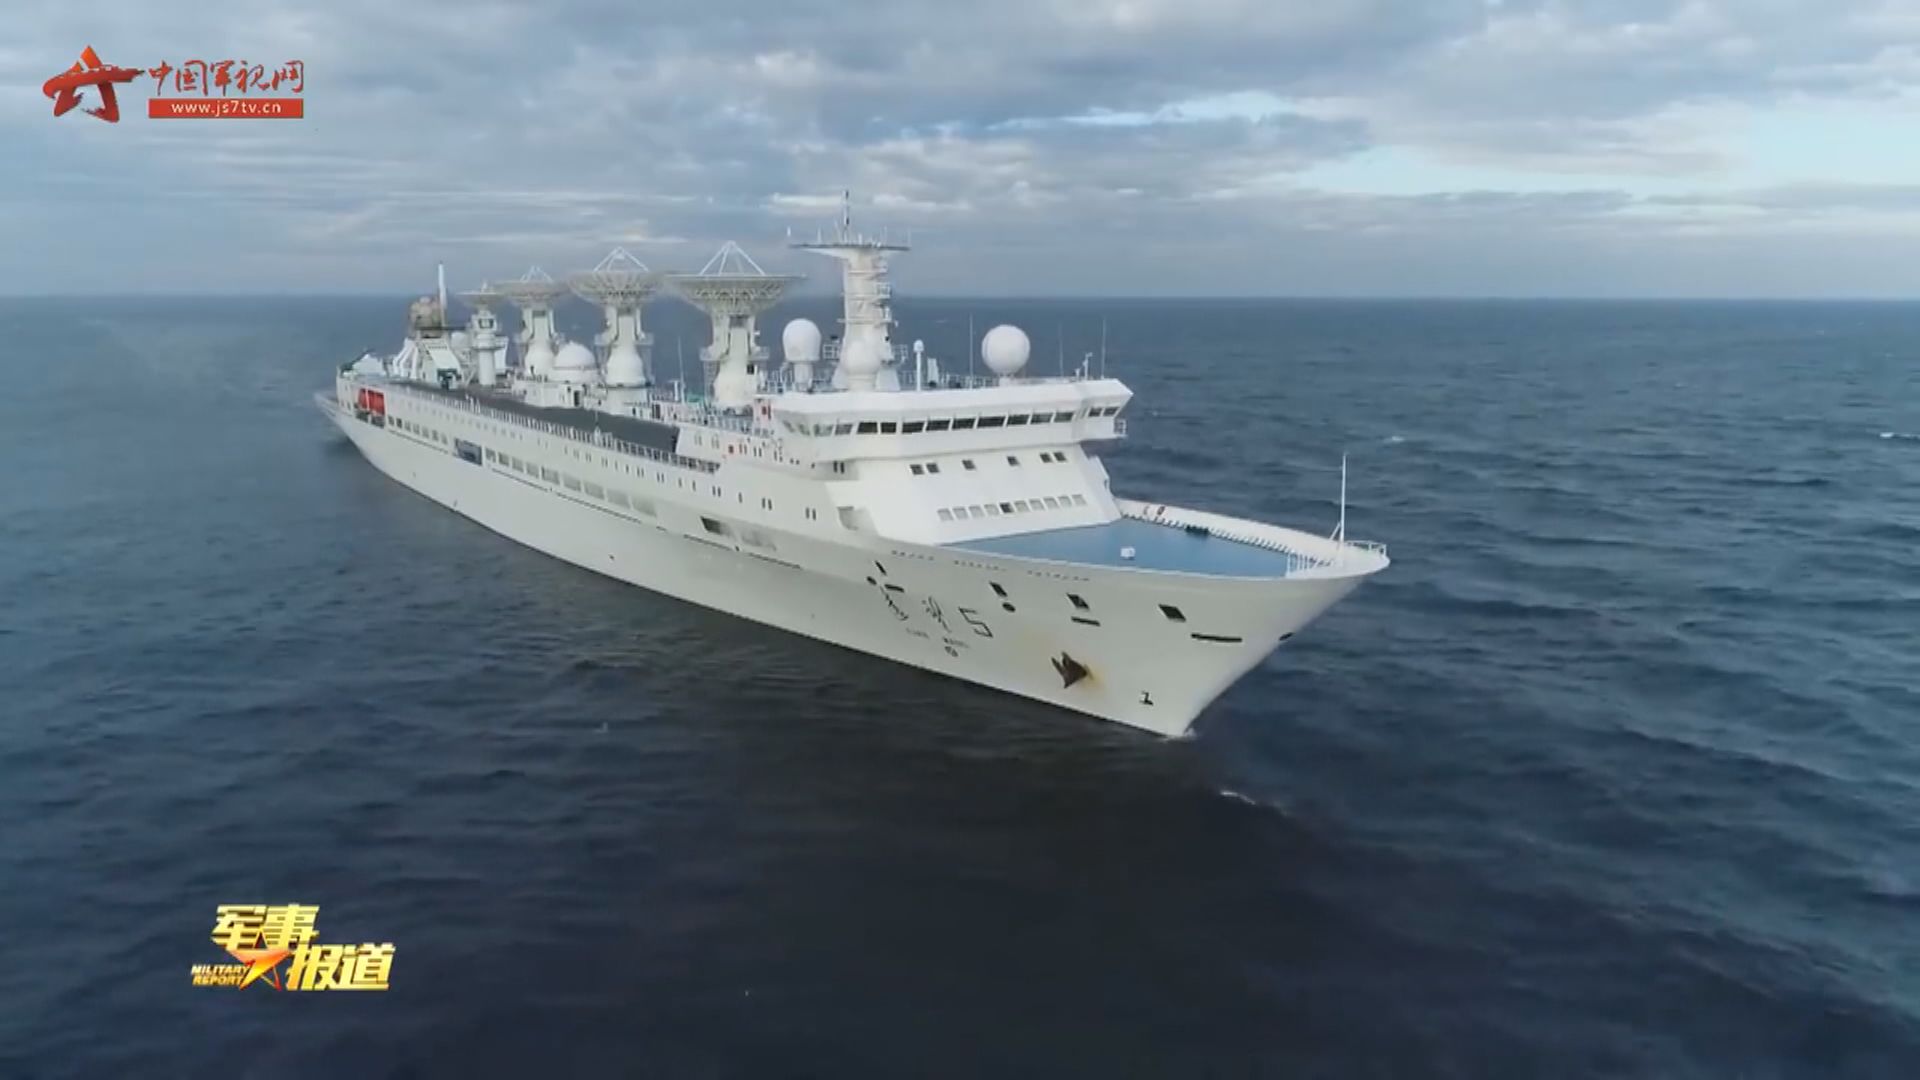 中國測量船「遠望5號」獲准停靠斯里蘭卡港口一周